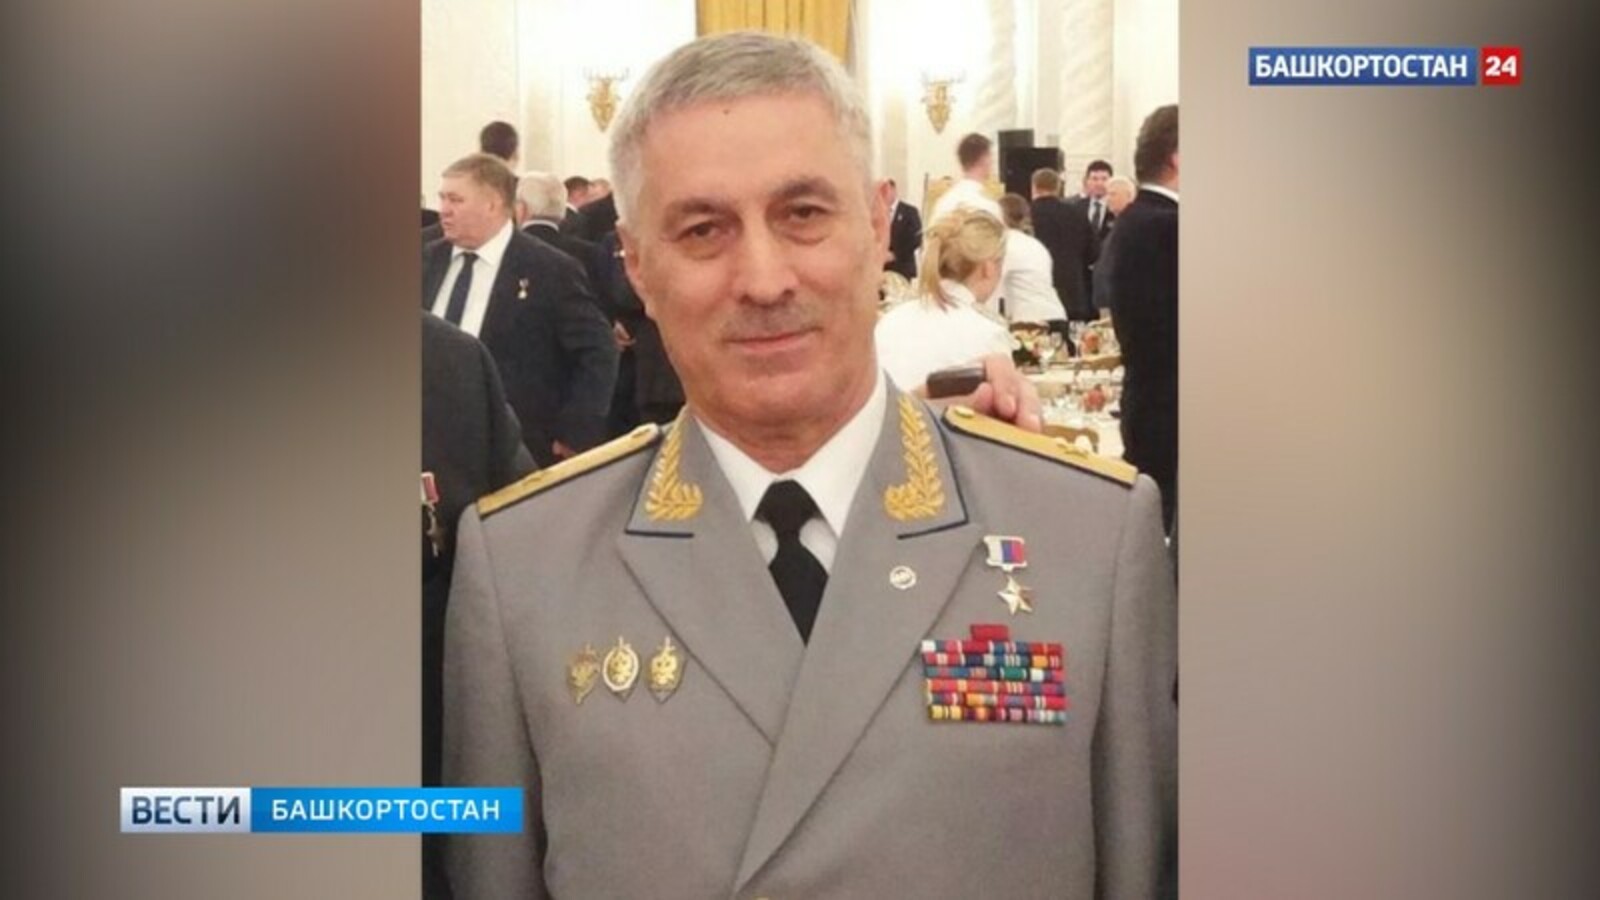 Спецпредставителем Башкирии по инвестиционной деятельности назначен Ханалиев Умарпаша Юсупович